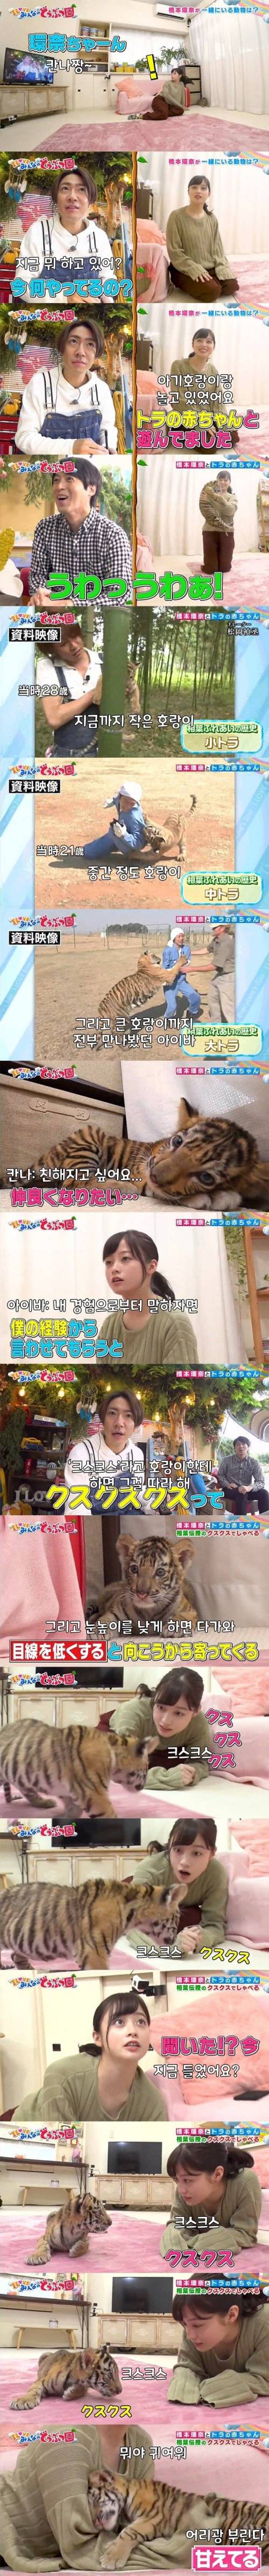 [스압] 호랑이랑 노는 일본 여배우.jpg